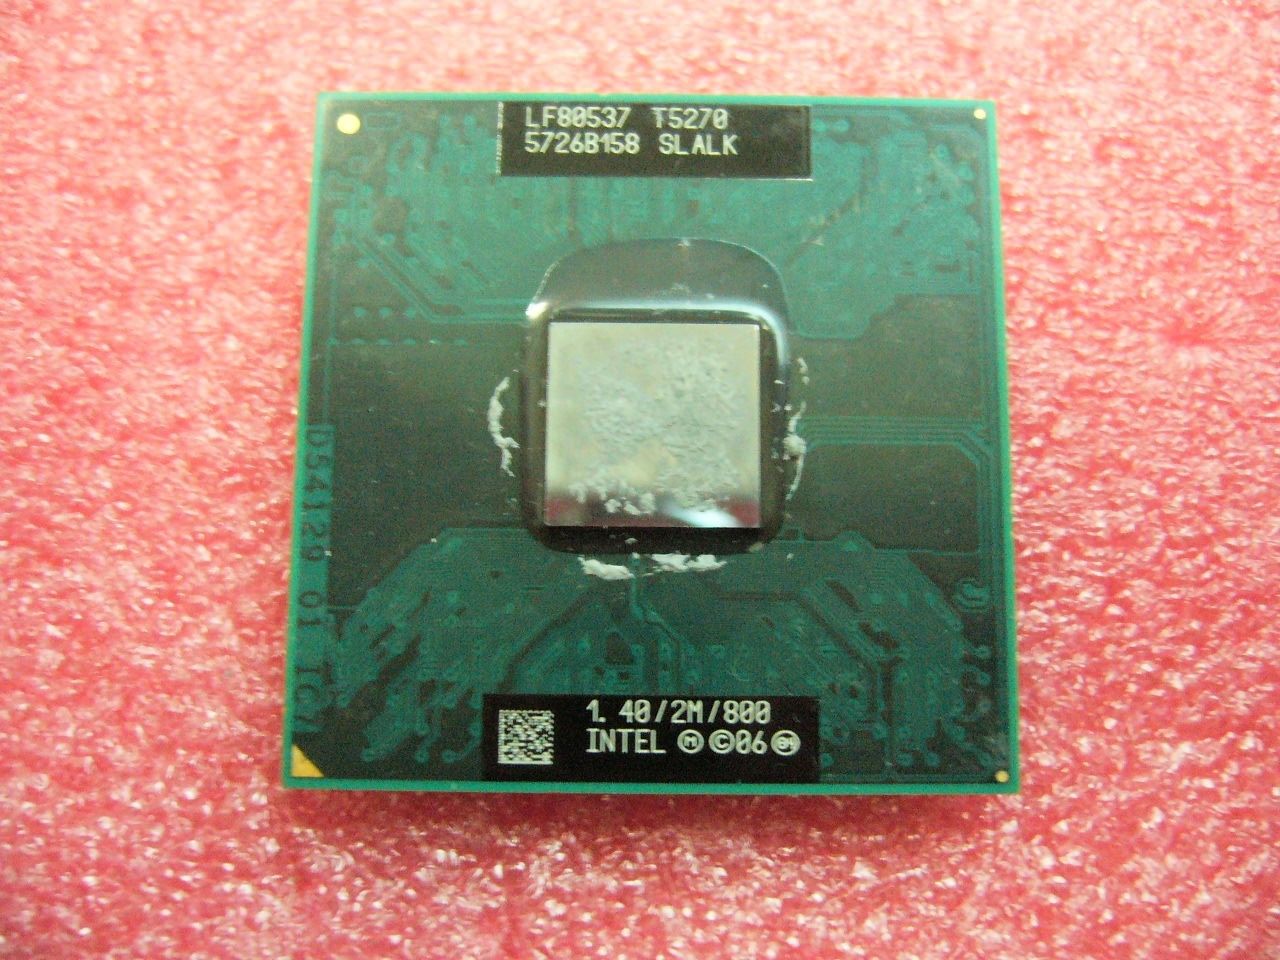 QTY 1x INTEL Core 2 Duo T5270 1.4 GHz/2M/800Mhz Processor for Laptop SLALK